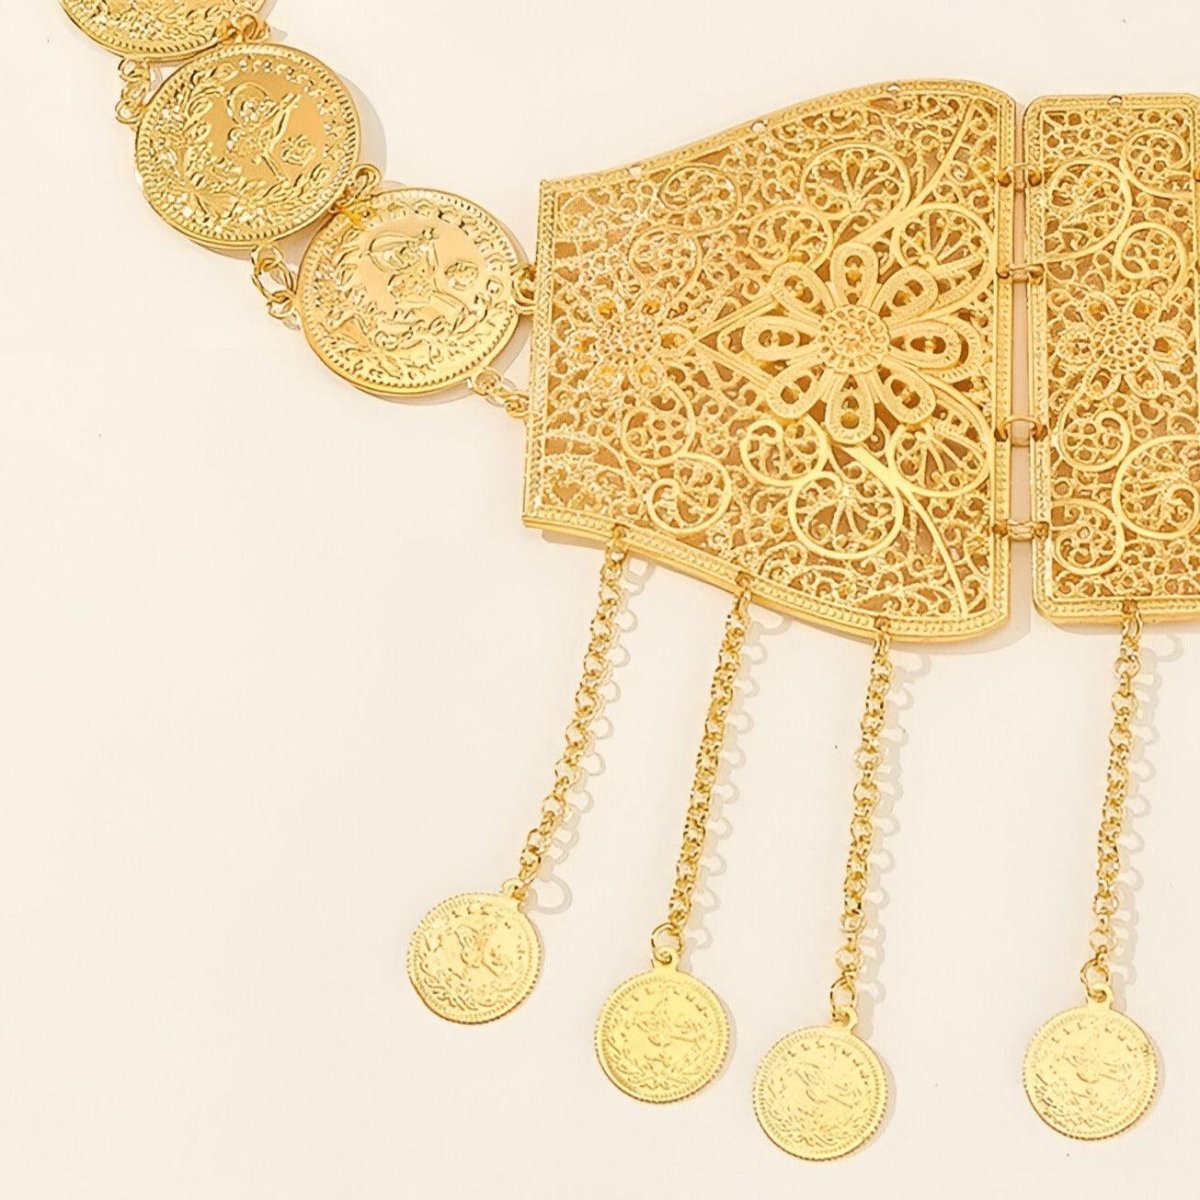 Ceinture marocaine aux détails ajourés et médaillons, modèle Samima - La Boutique de la Ceinture